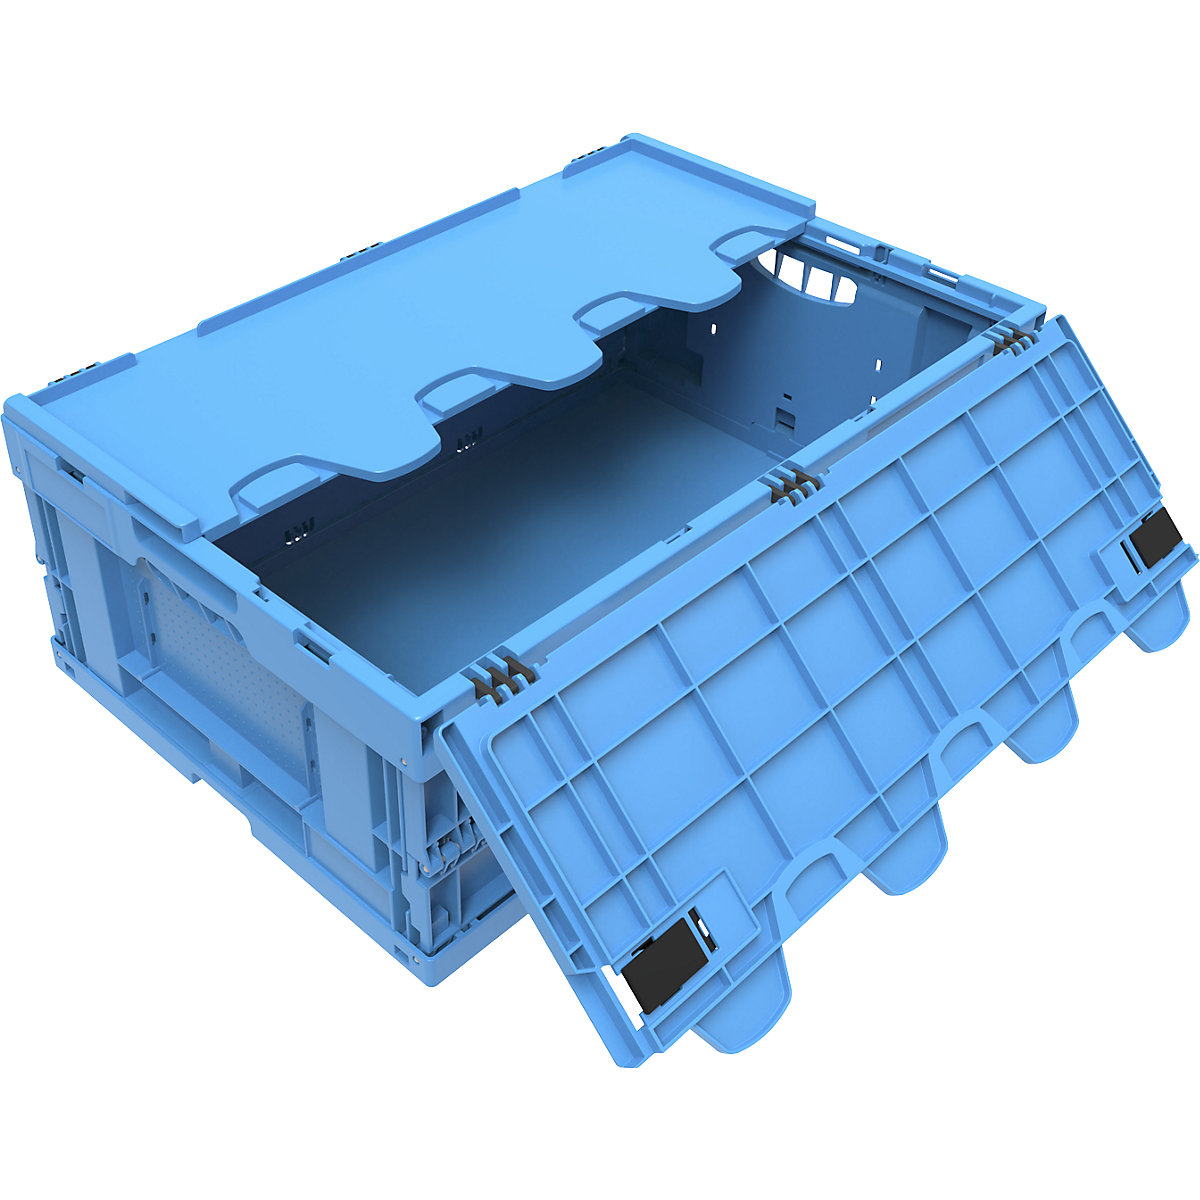 Vouwbox van polypropyleen, inhoud 44 l, met scharnierdeksel, blauw, stapelbaar-6